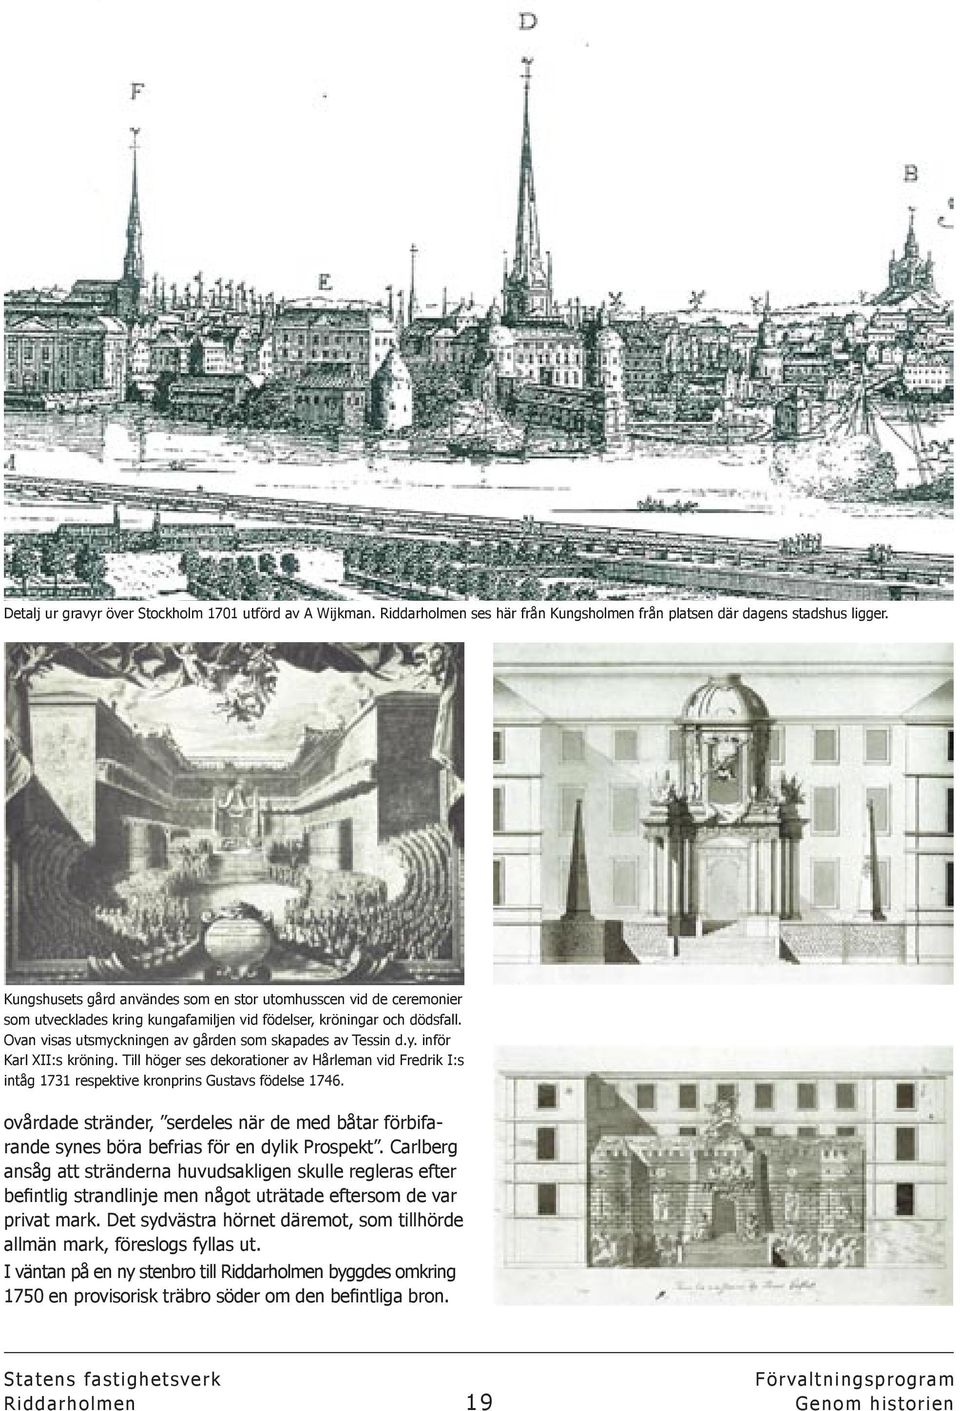 Ovan visas utsmyckningen av gården som skapades av Tessin d.y. inför Karl XII:s kröning. Till höger ses dekorationer av Hårleman vid Fredrik I:s intåg 1731 respektive kronprins Gustavs födelse 1746.